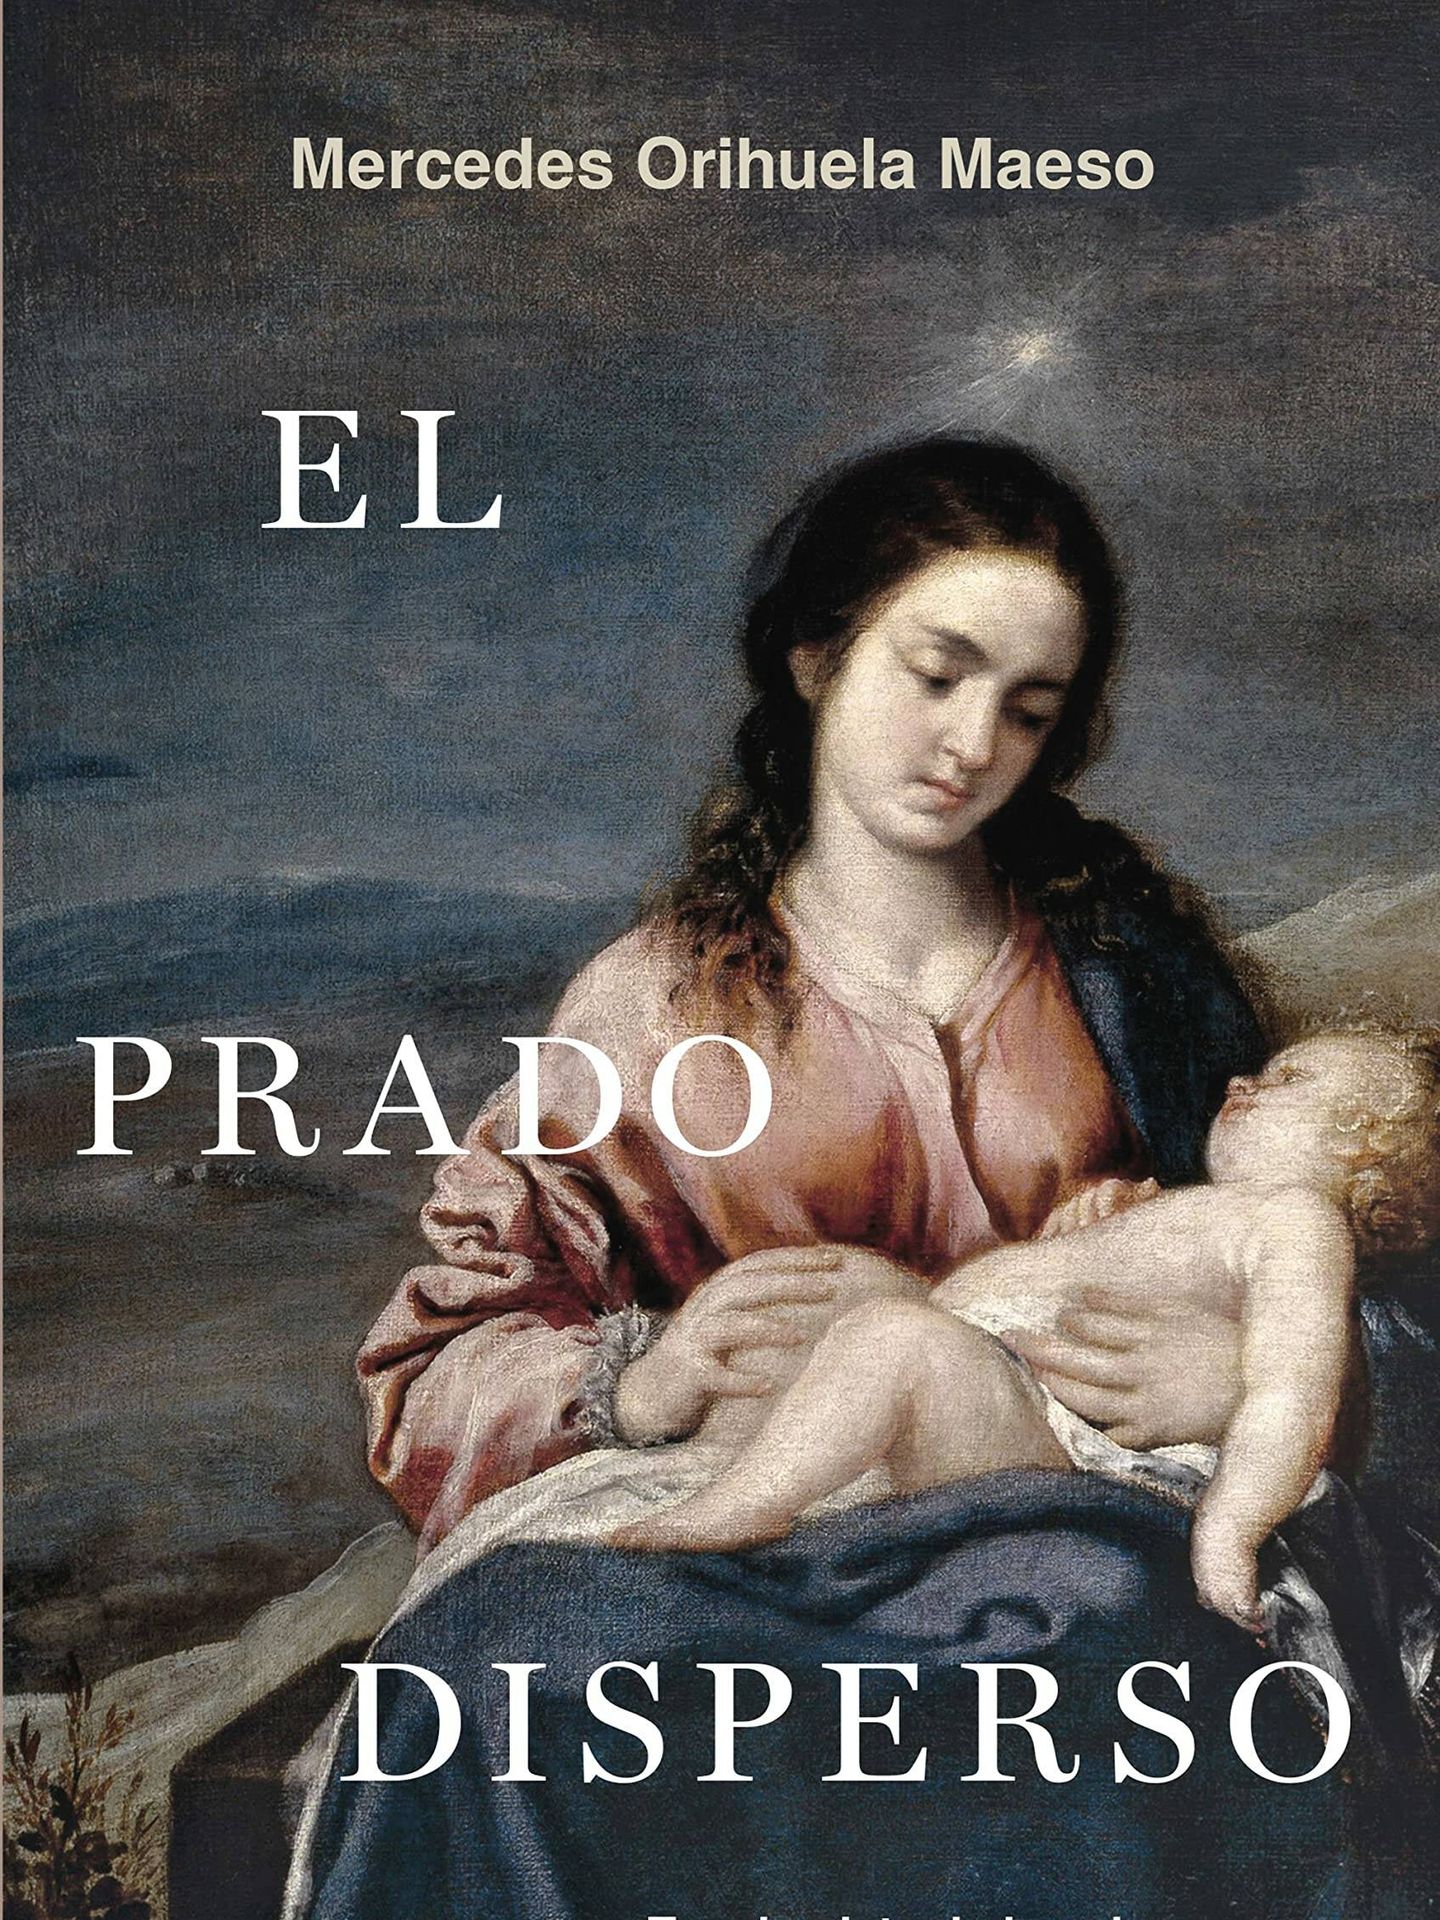 'El Prado disperso'